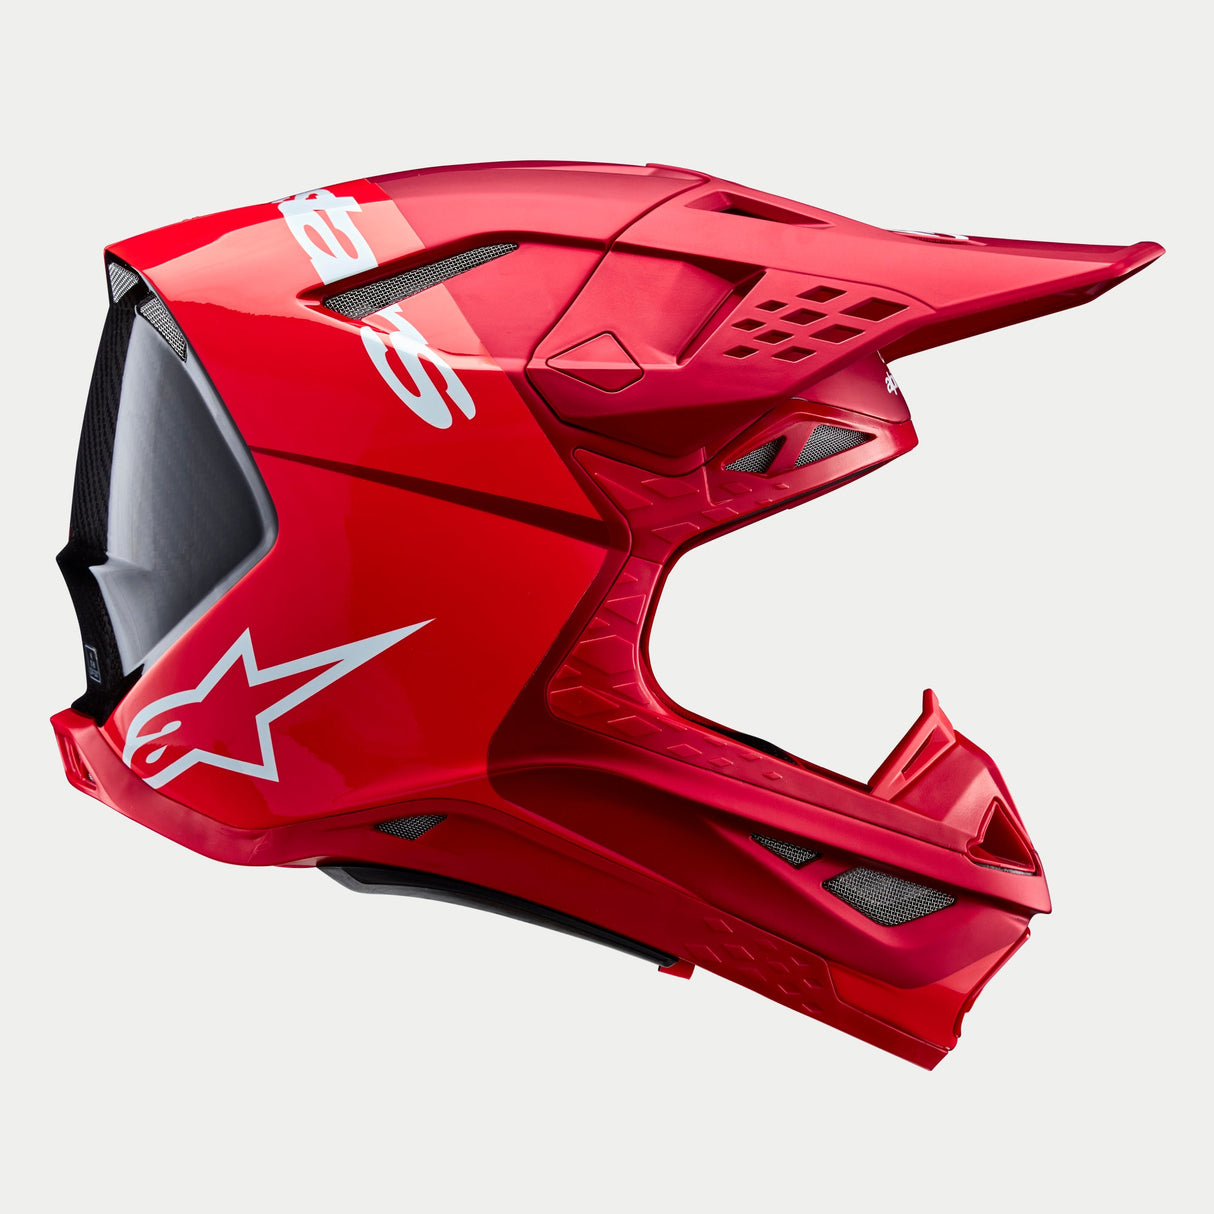 Alpinestars Supertech SM10 Flood Ece 22.06 Helmet - Fluro Red Matt and Gloss